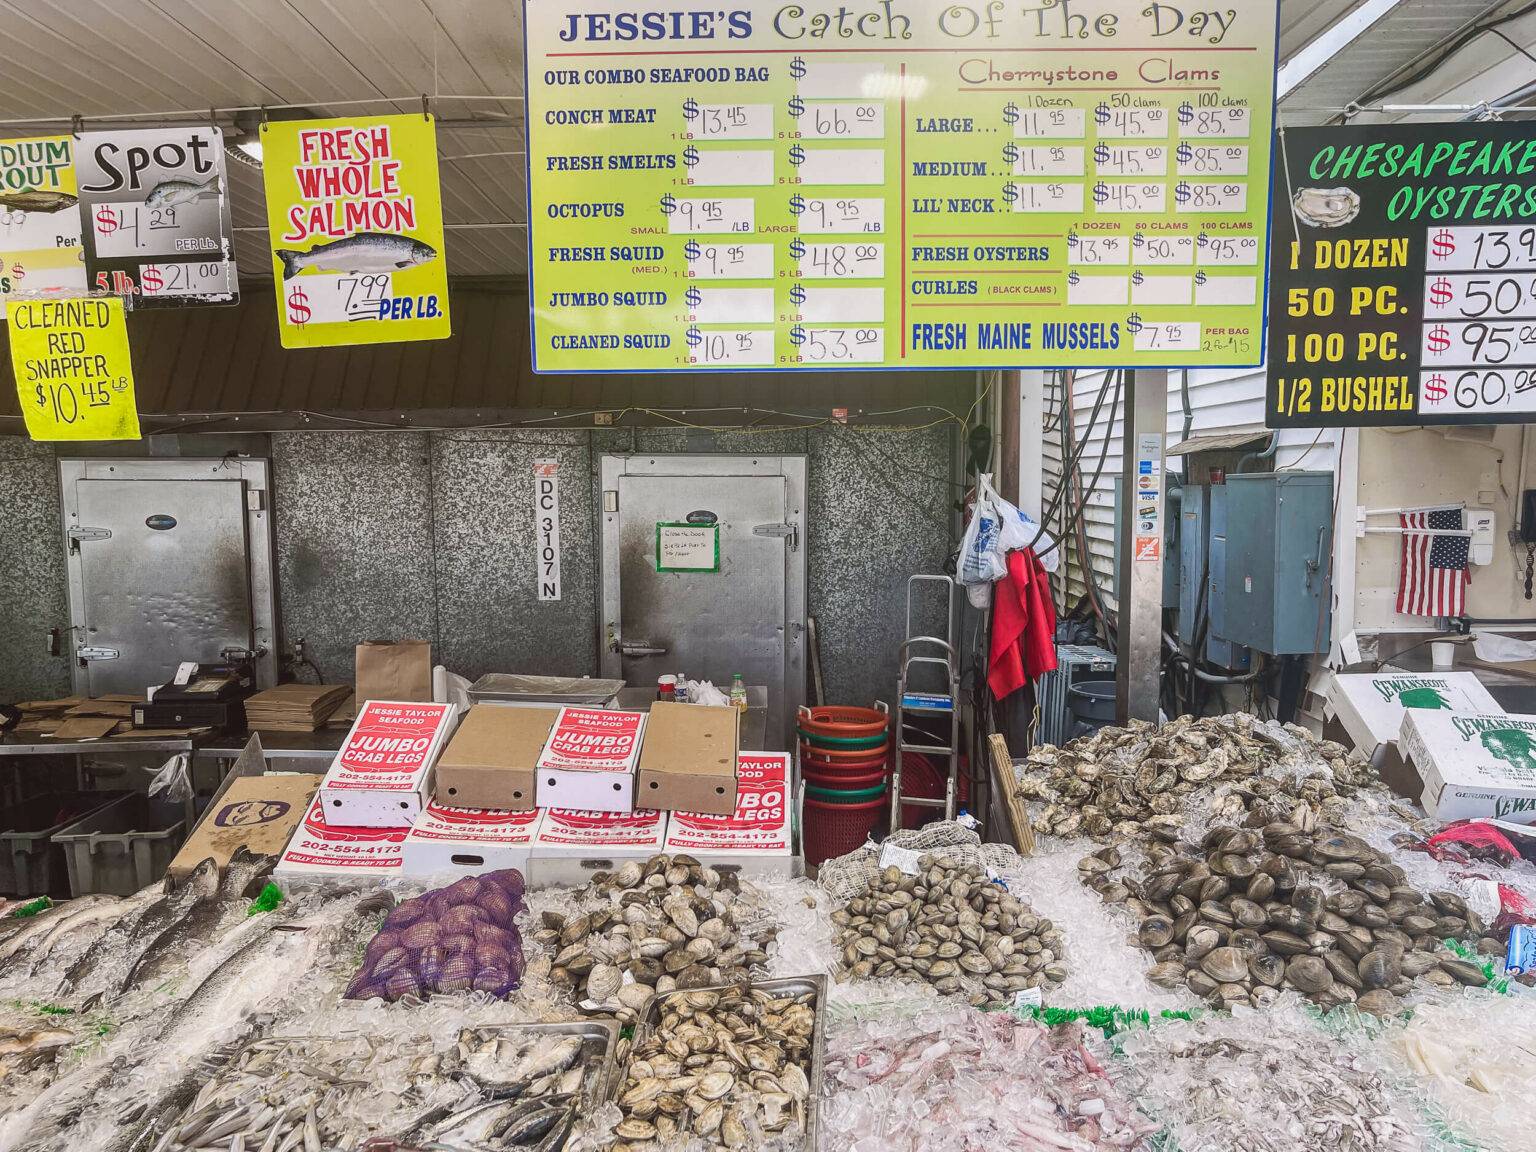 Der traditionelle Fischmarkt am Washington Channel ist ein echtes Spektakel.